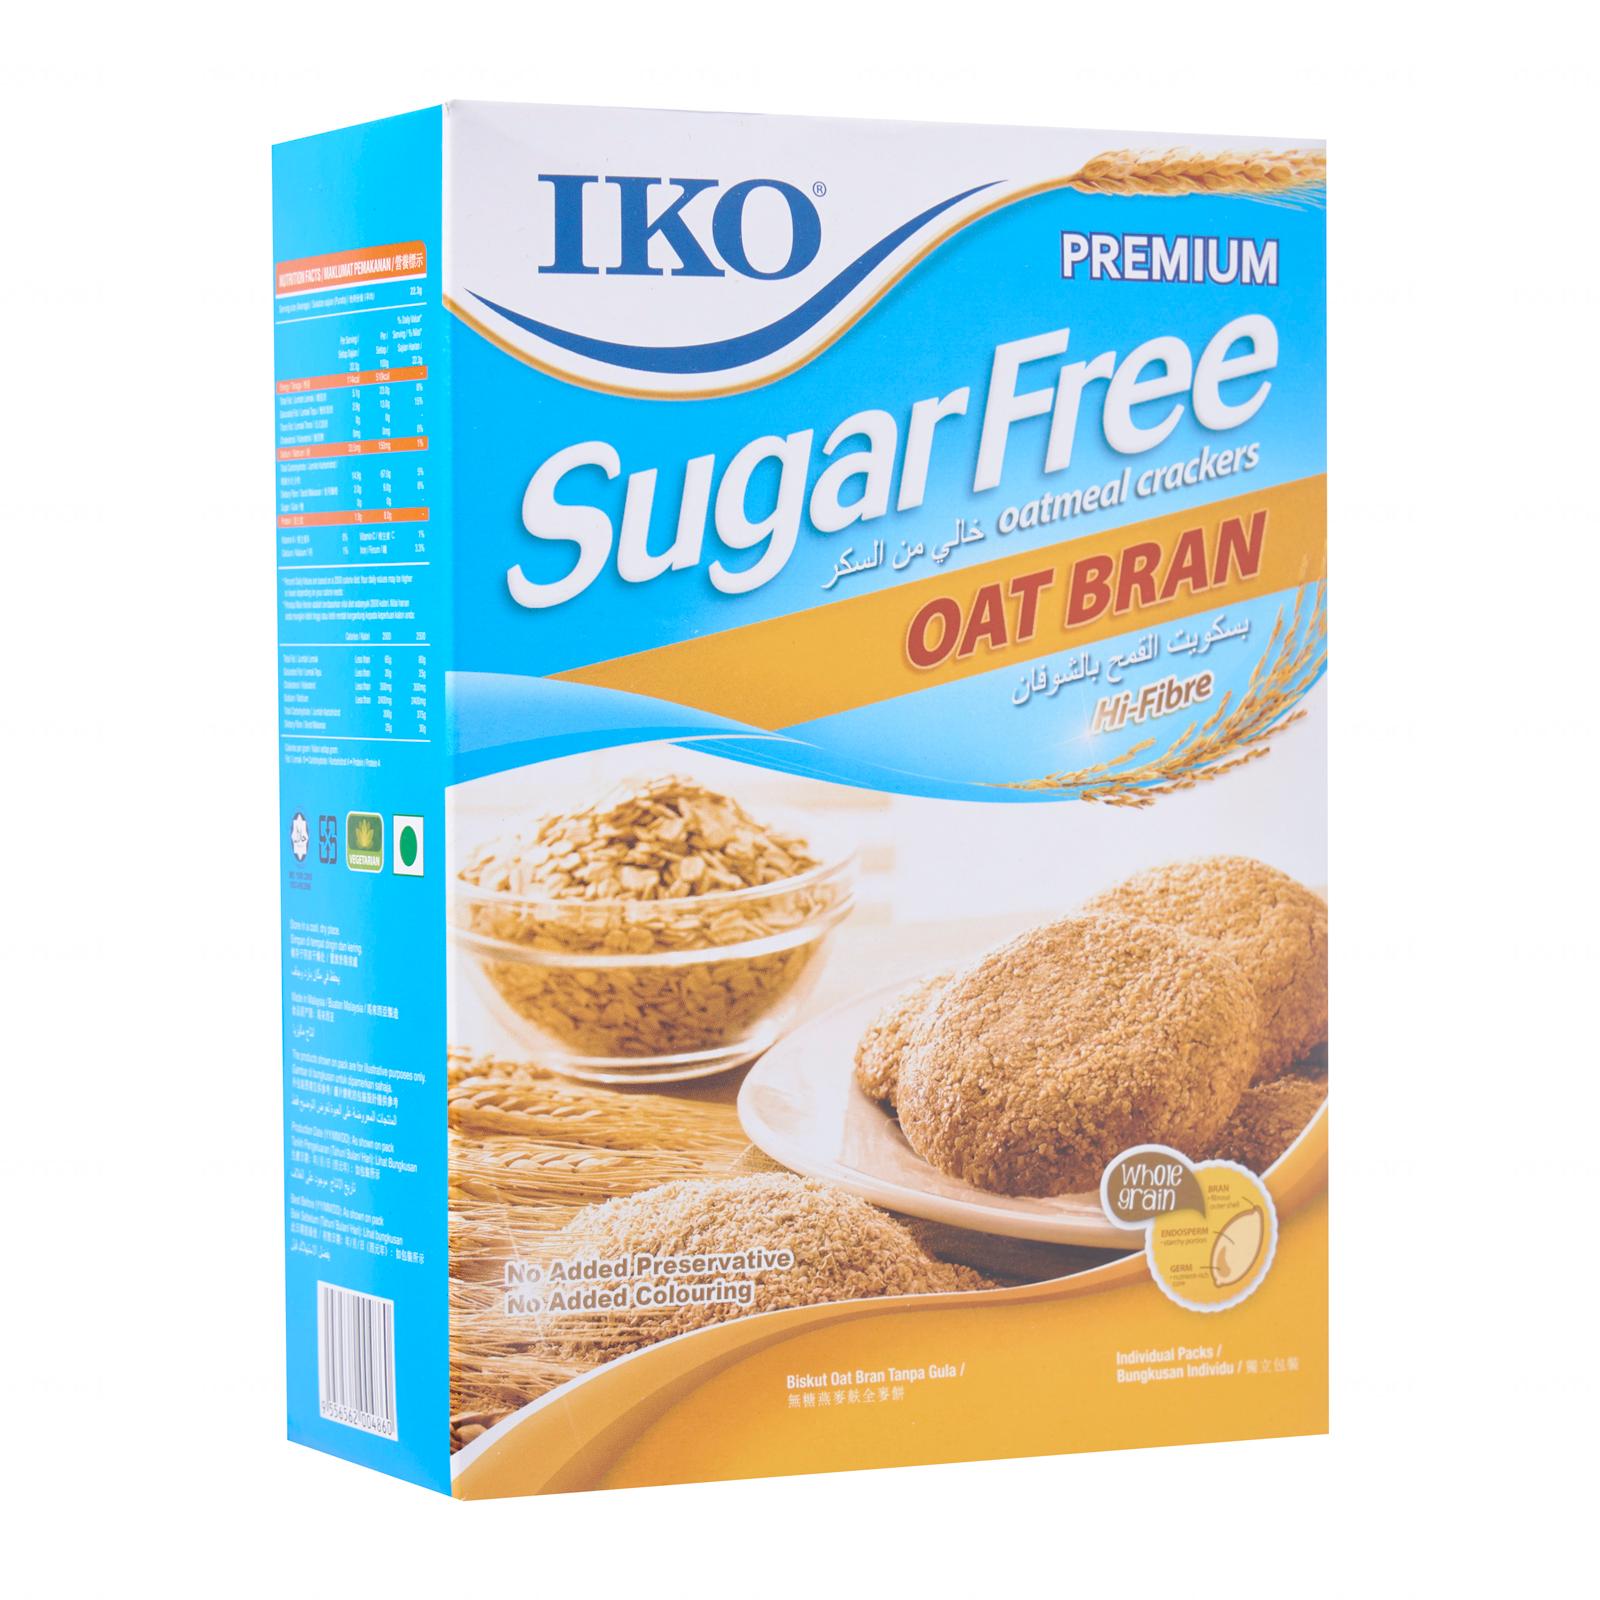 Sugar Free Oat Bran Oatmeal Cracker 无糖燕麦夫饼